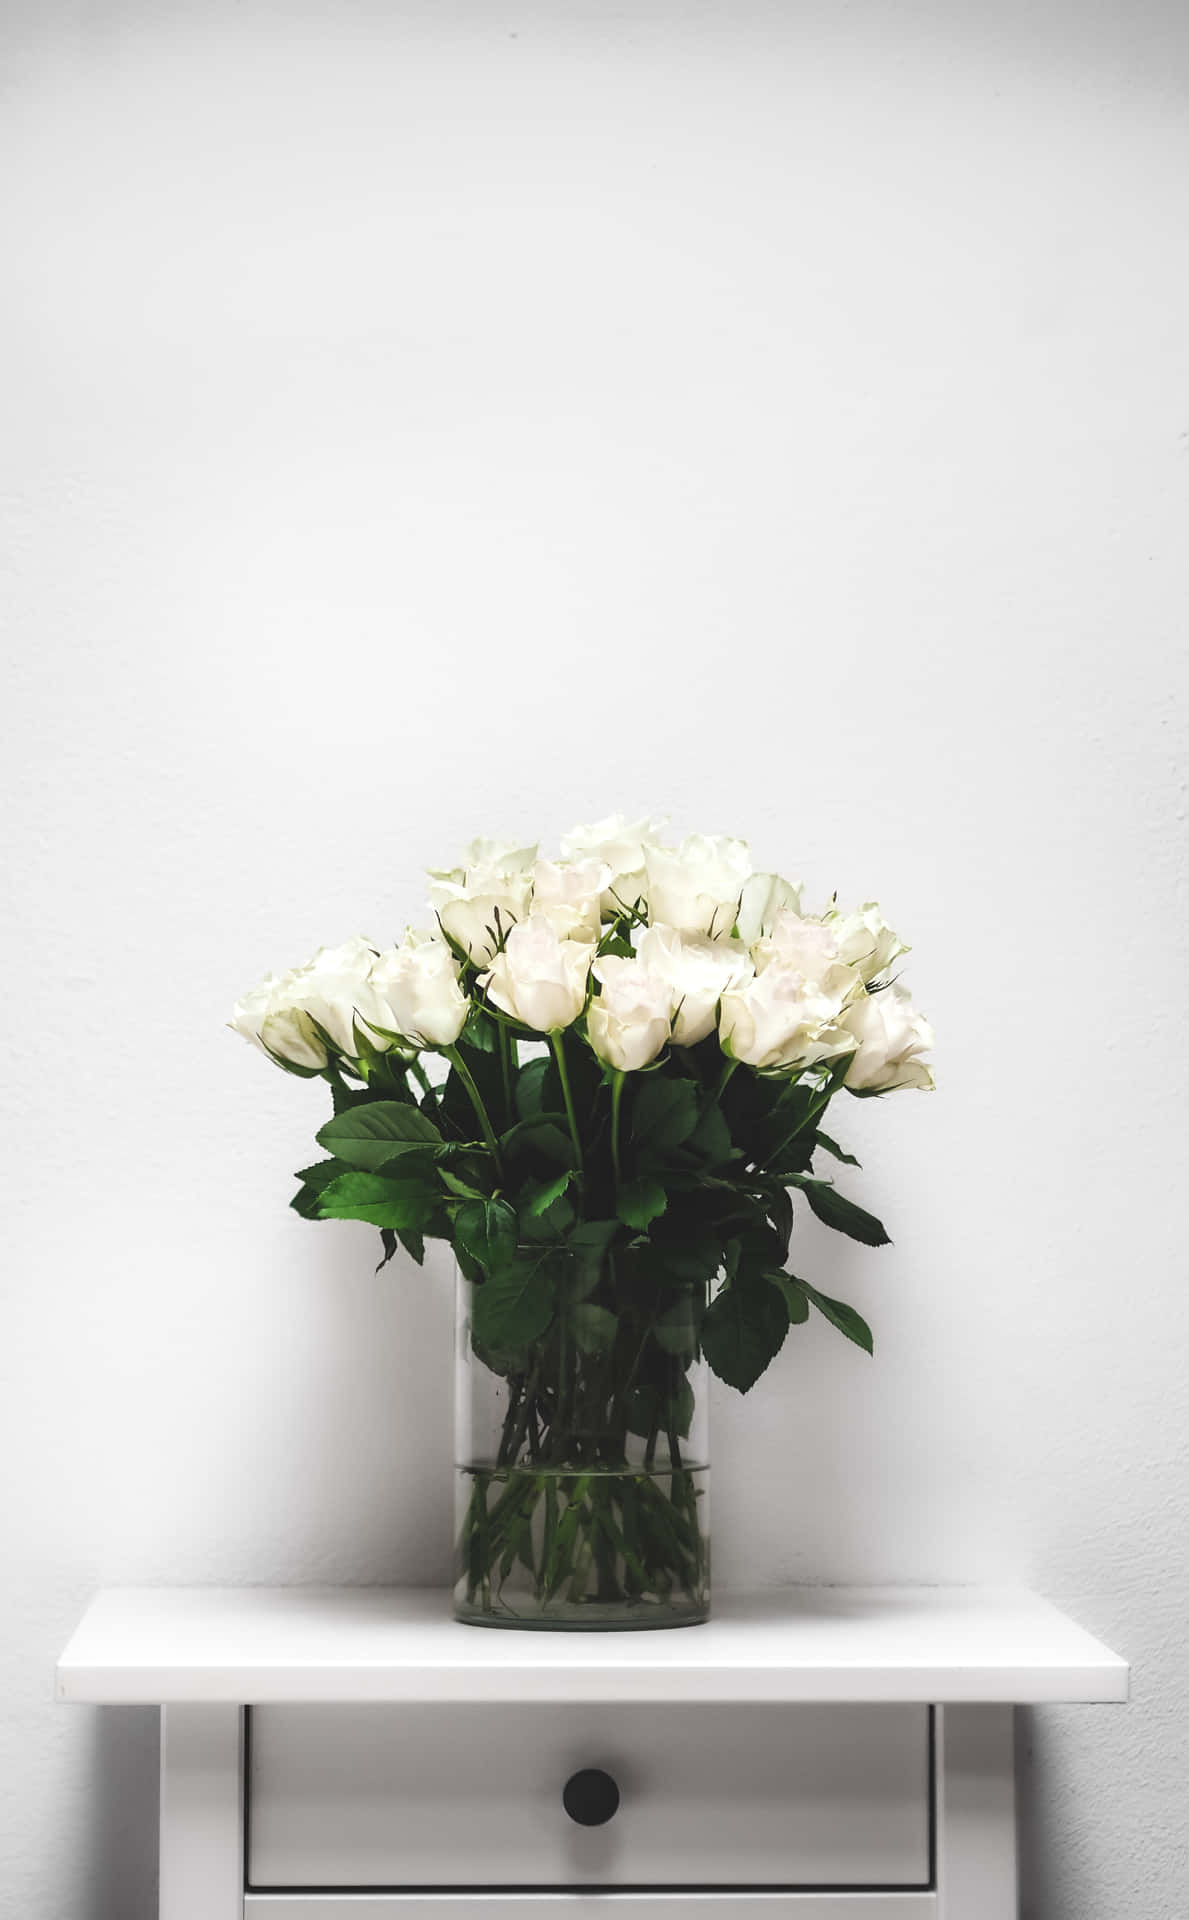 Fondode Pantalla Con Un Jarrón De Flores Blancas De Rosas En Un Gabinete De Retrato.